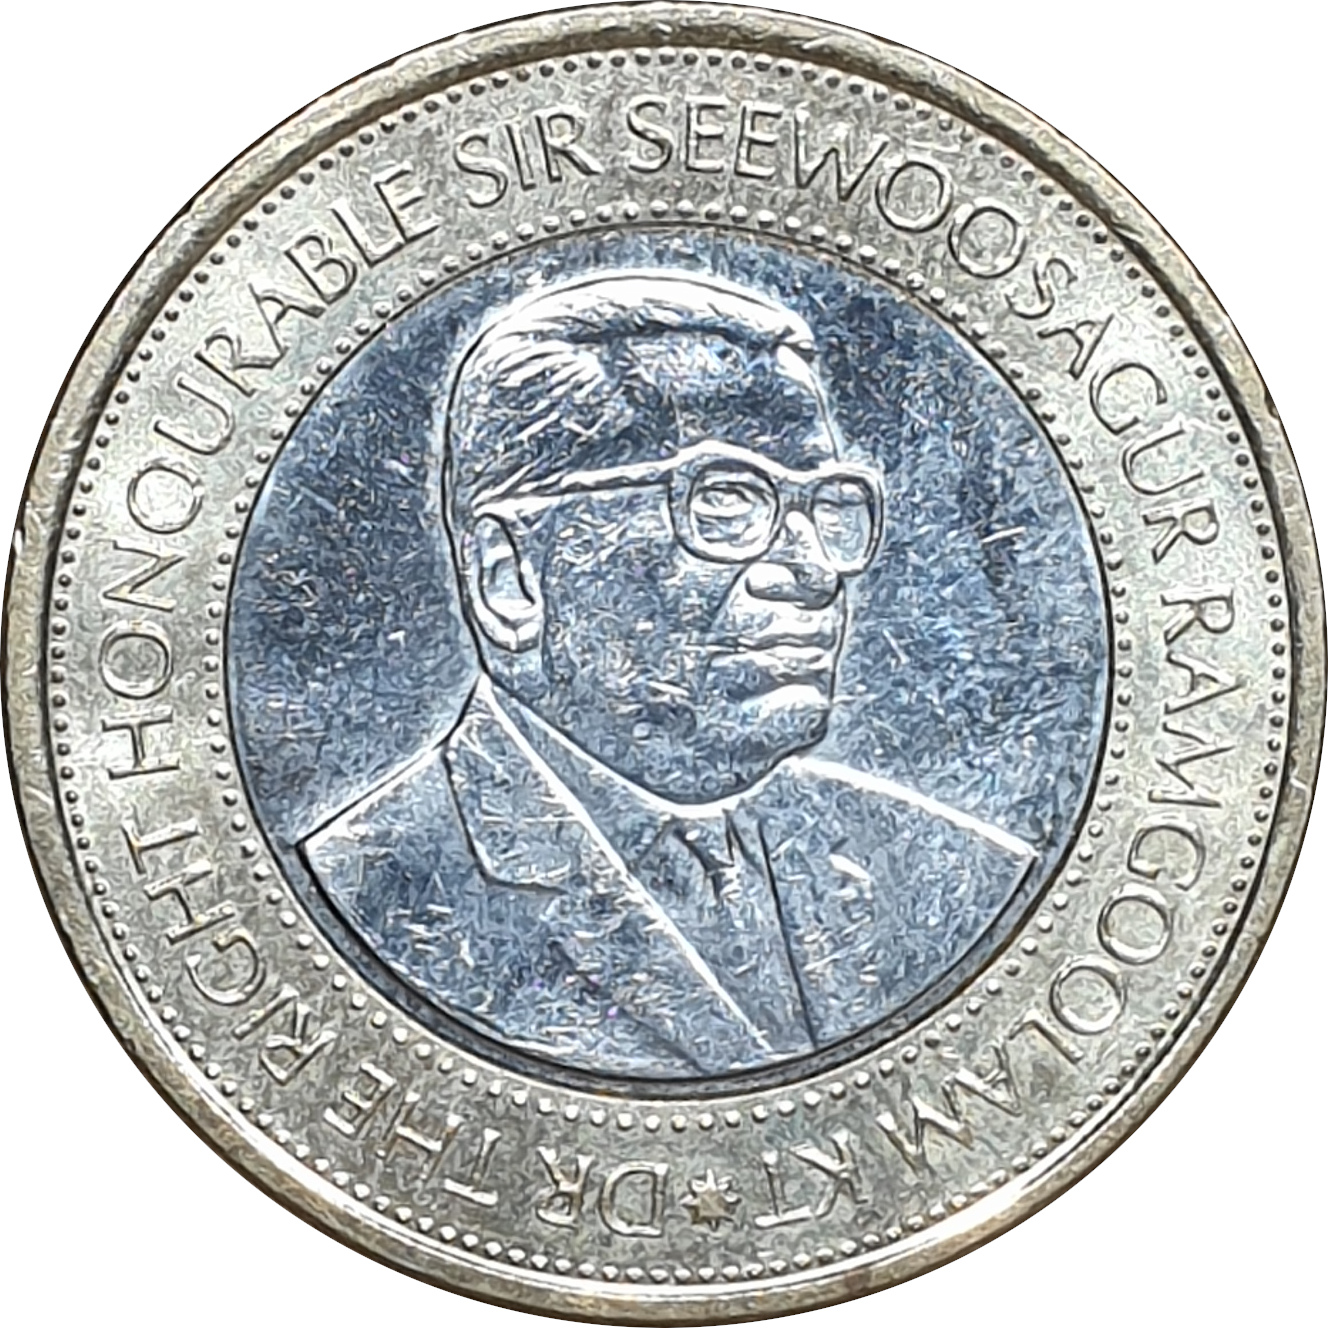 20 rupees - Sir Seewoosagur Ramgoolam